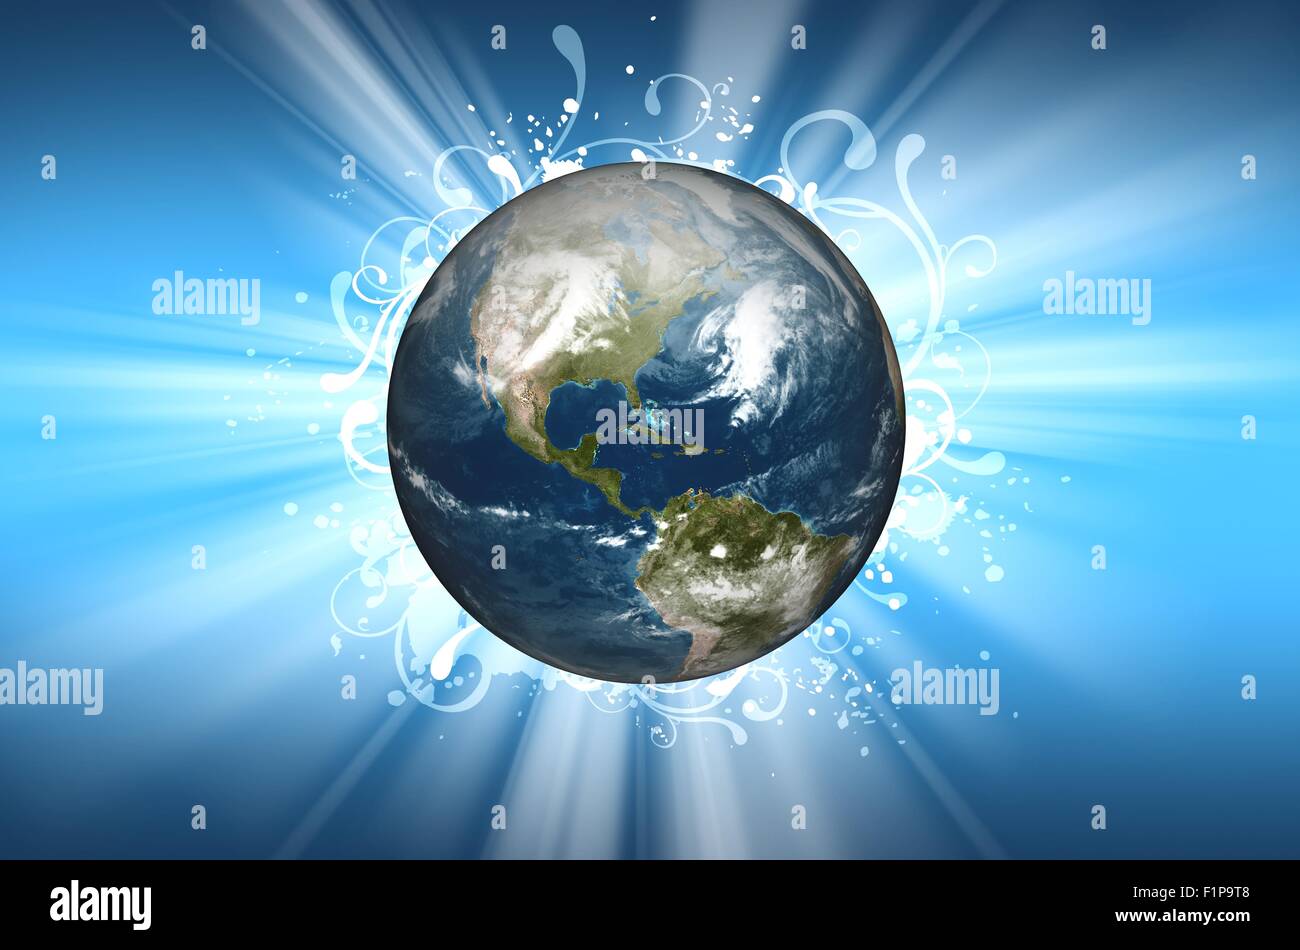 Planet Erde-Hintergrund-Design. Cool Planet Erde in der Mitte, Sonne Licht  und florale Ornamente auf Stockfotografie - Alamy